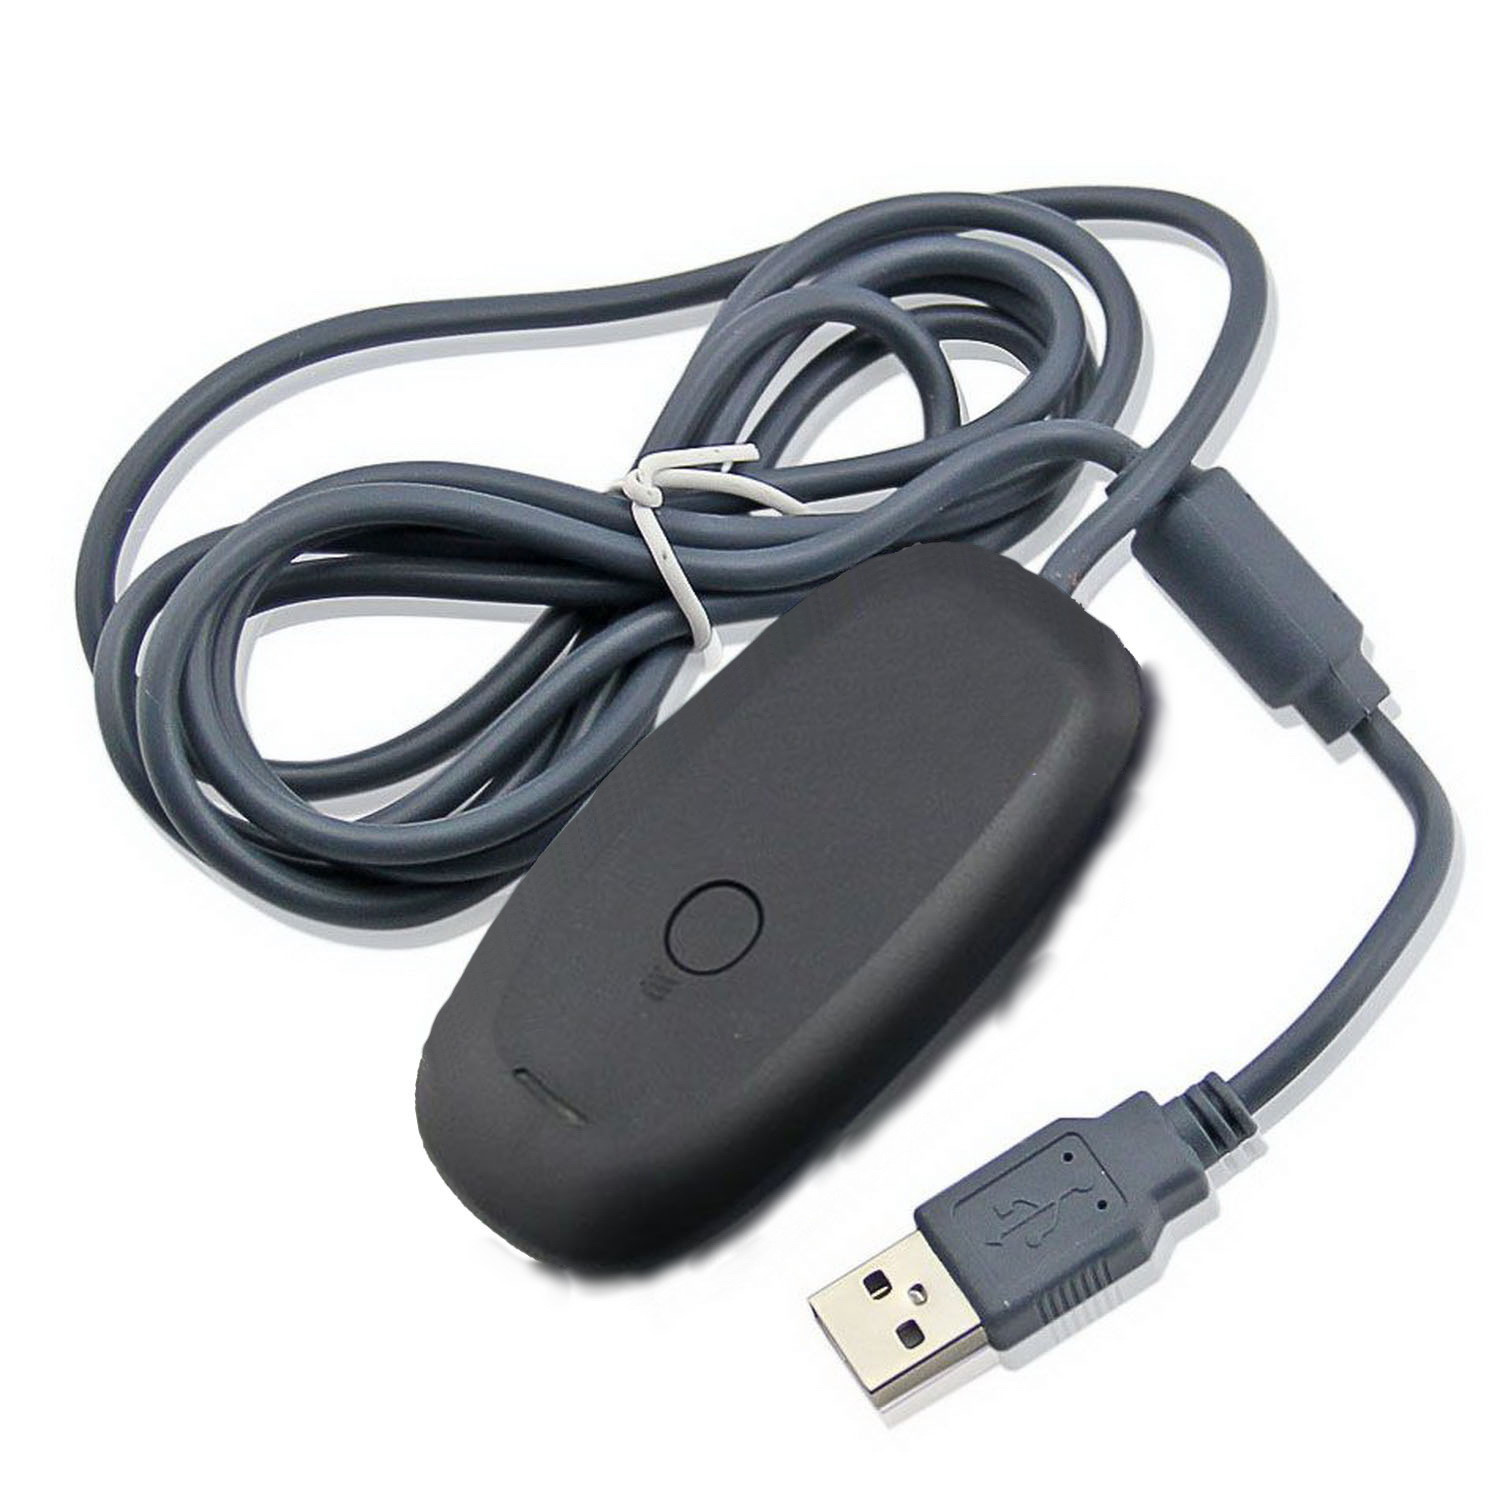 Achat récepteur USB pour manette sans fil XBOX 360 dongle TV mini PC Android